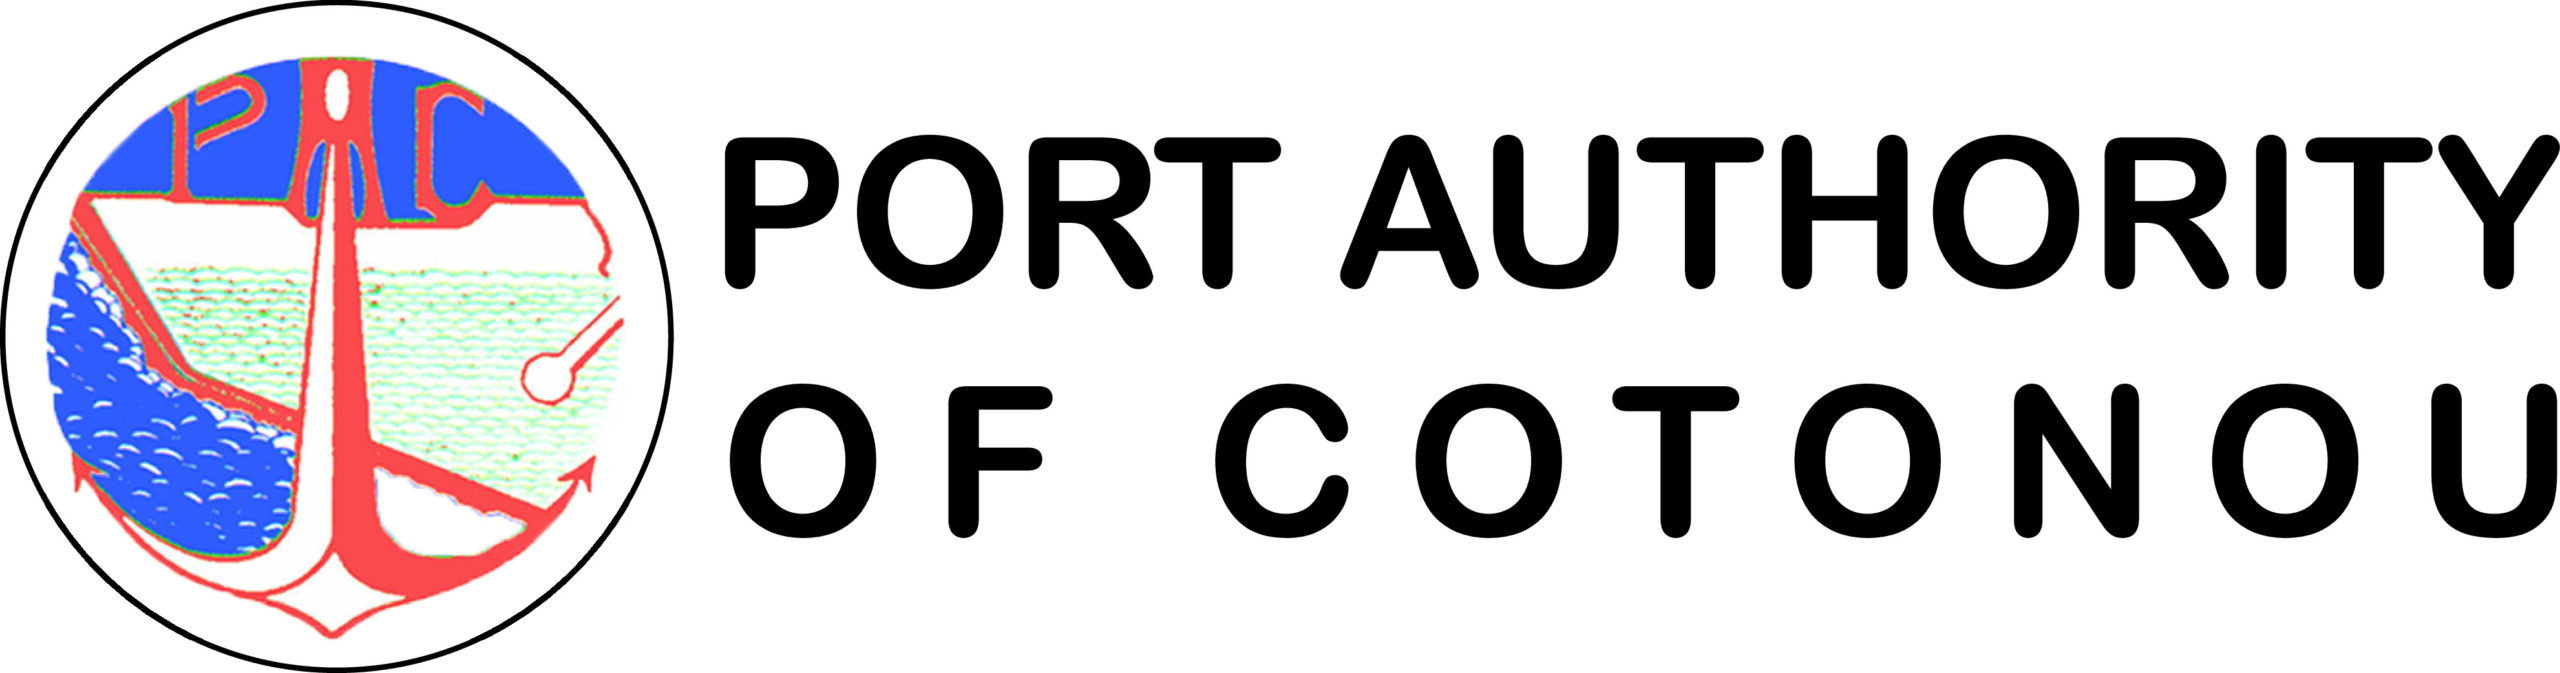 Port authority of cotonou